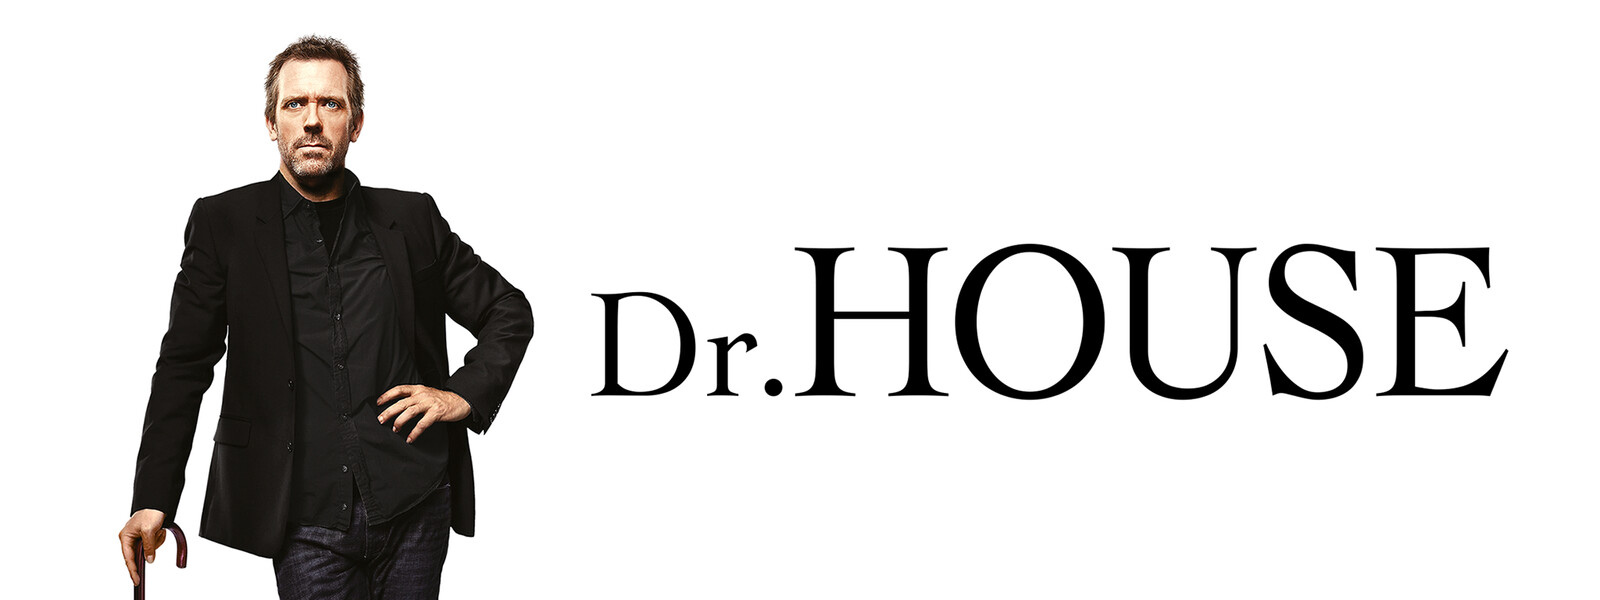 Dr. HOUSE／ドクター・ハウス シーズン5の動画 - Dr. HOUSE／ドクター・ハウス シーズン3